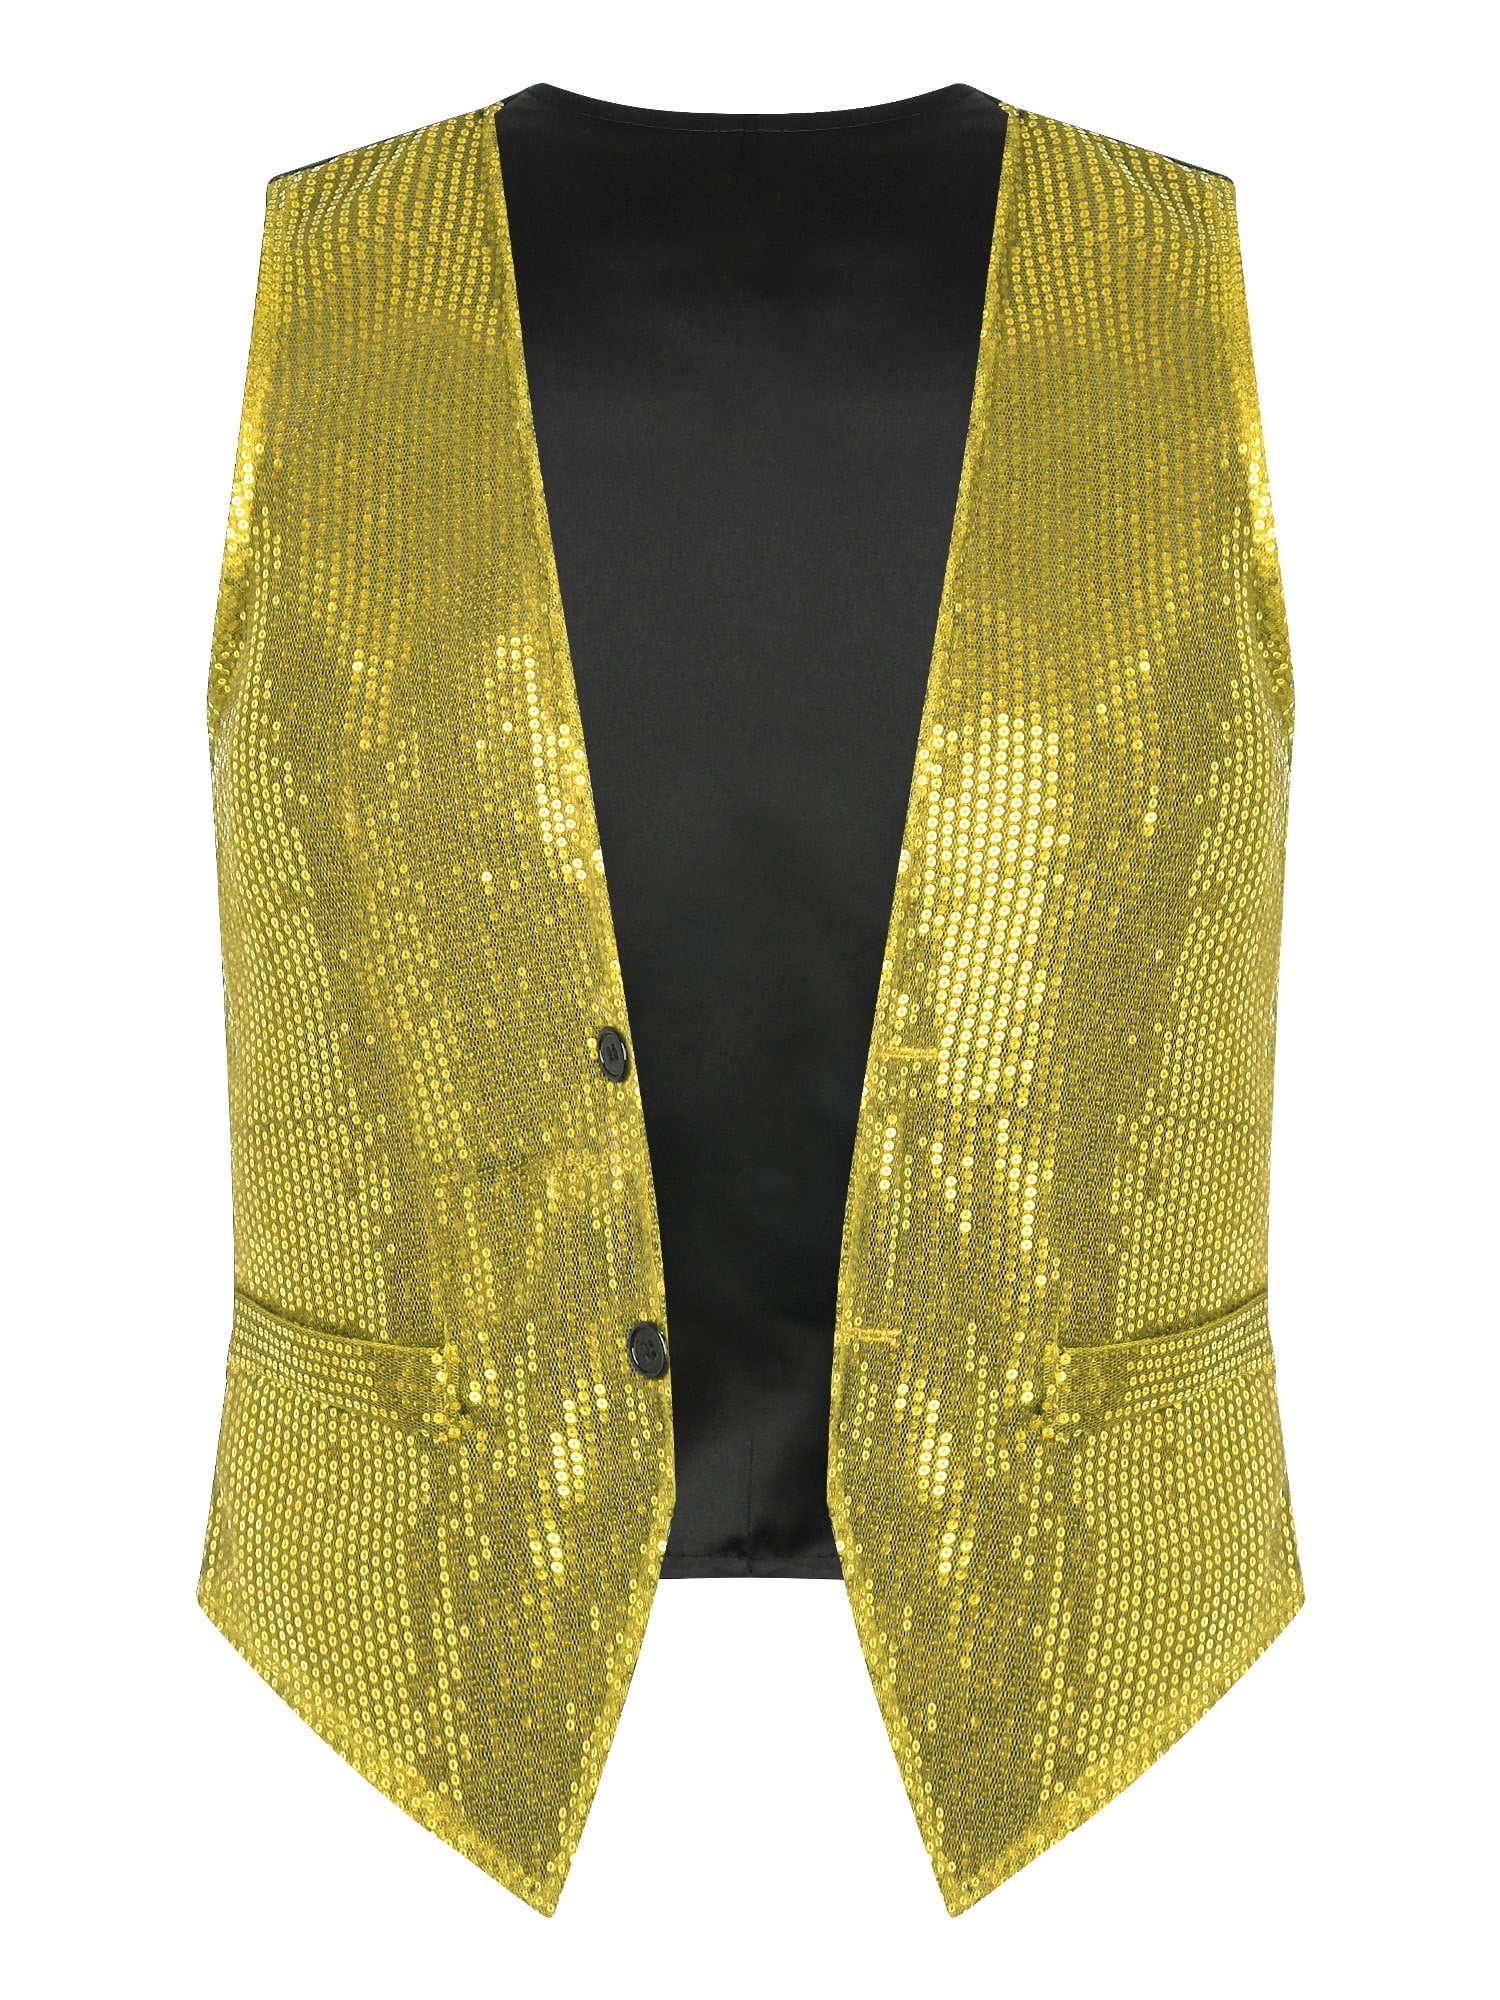 iiniim Men's Shiny Sequin Vest Suit Deep V-Neck Disco Party Dress ...